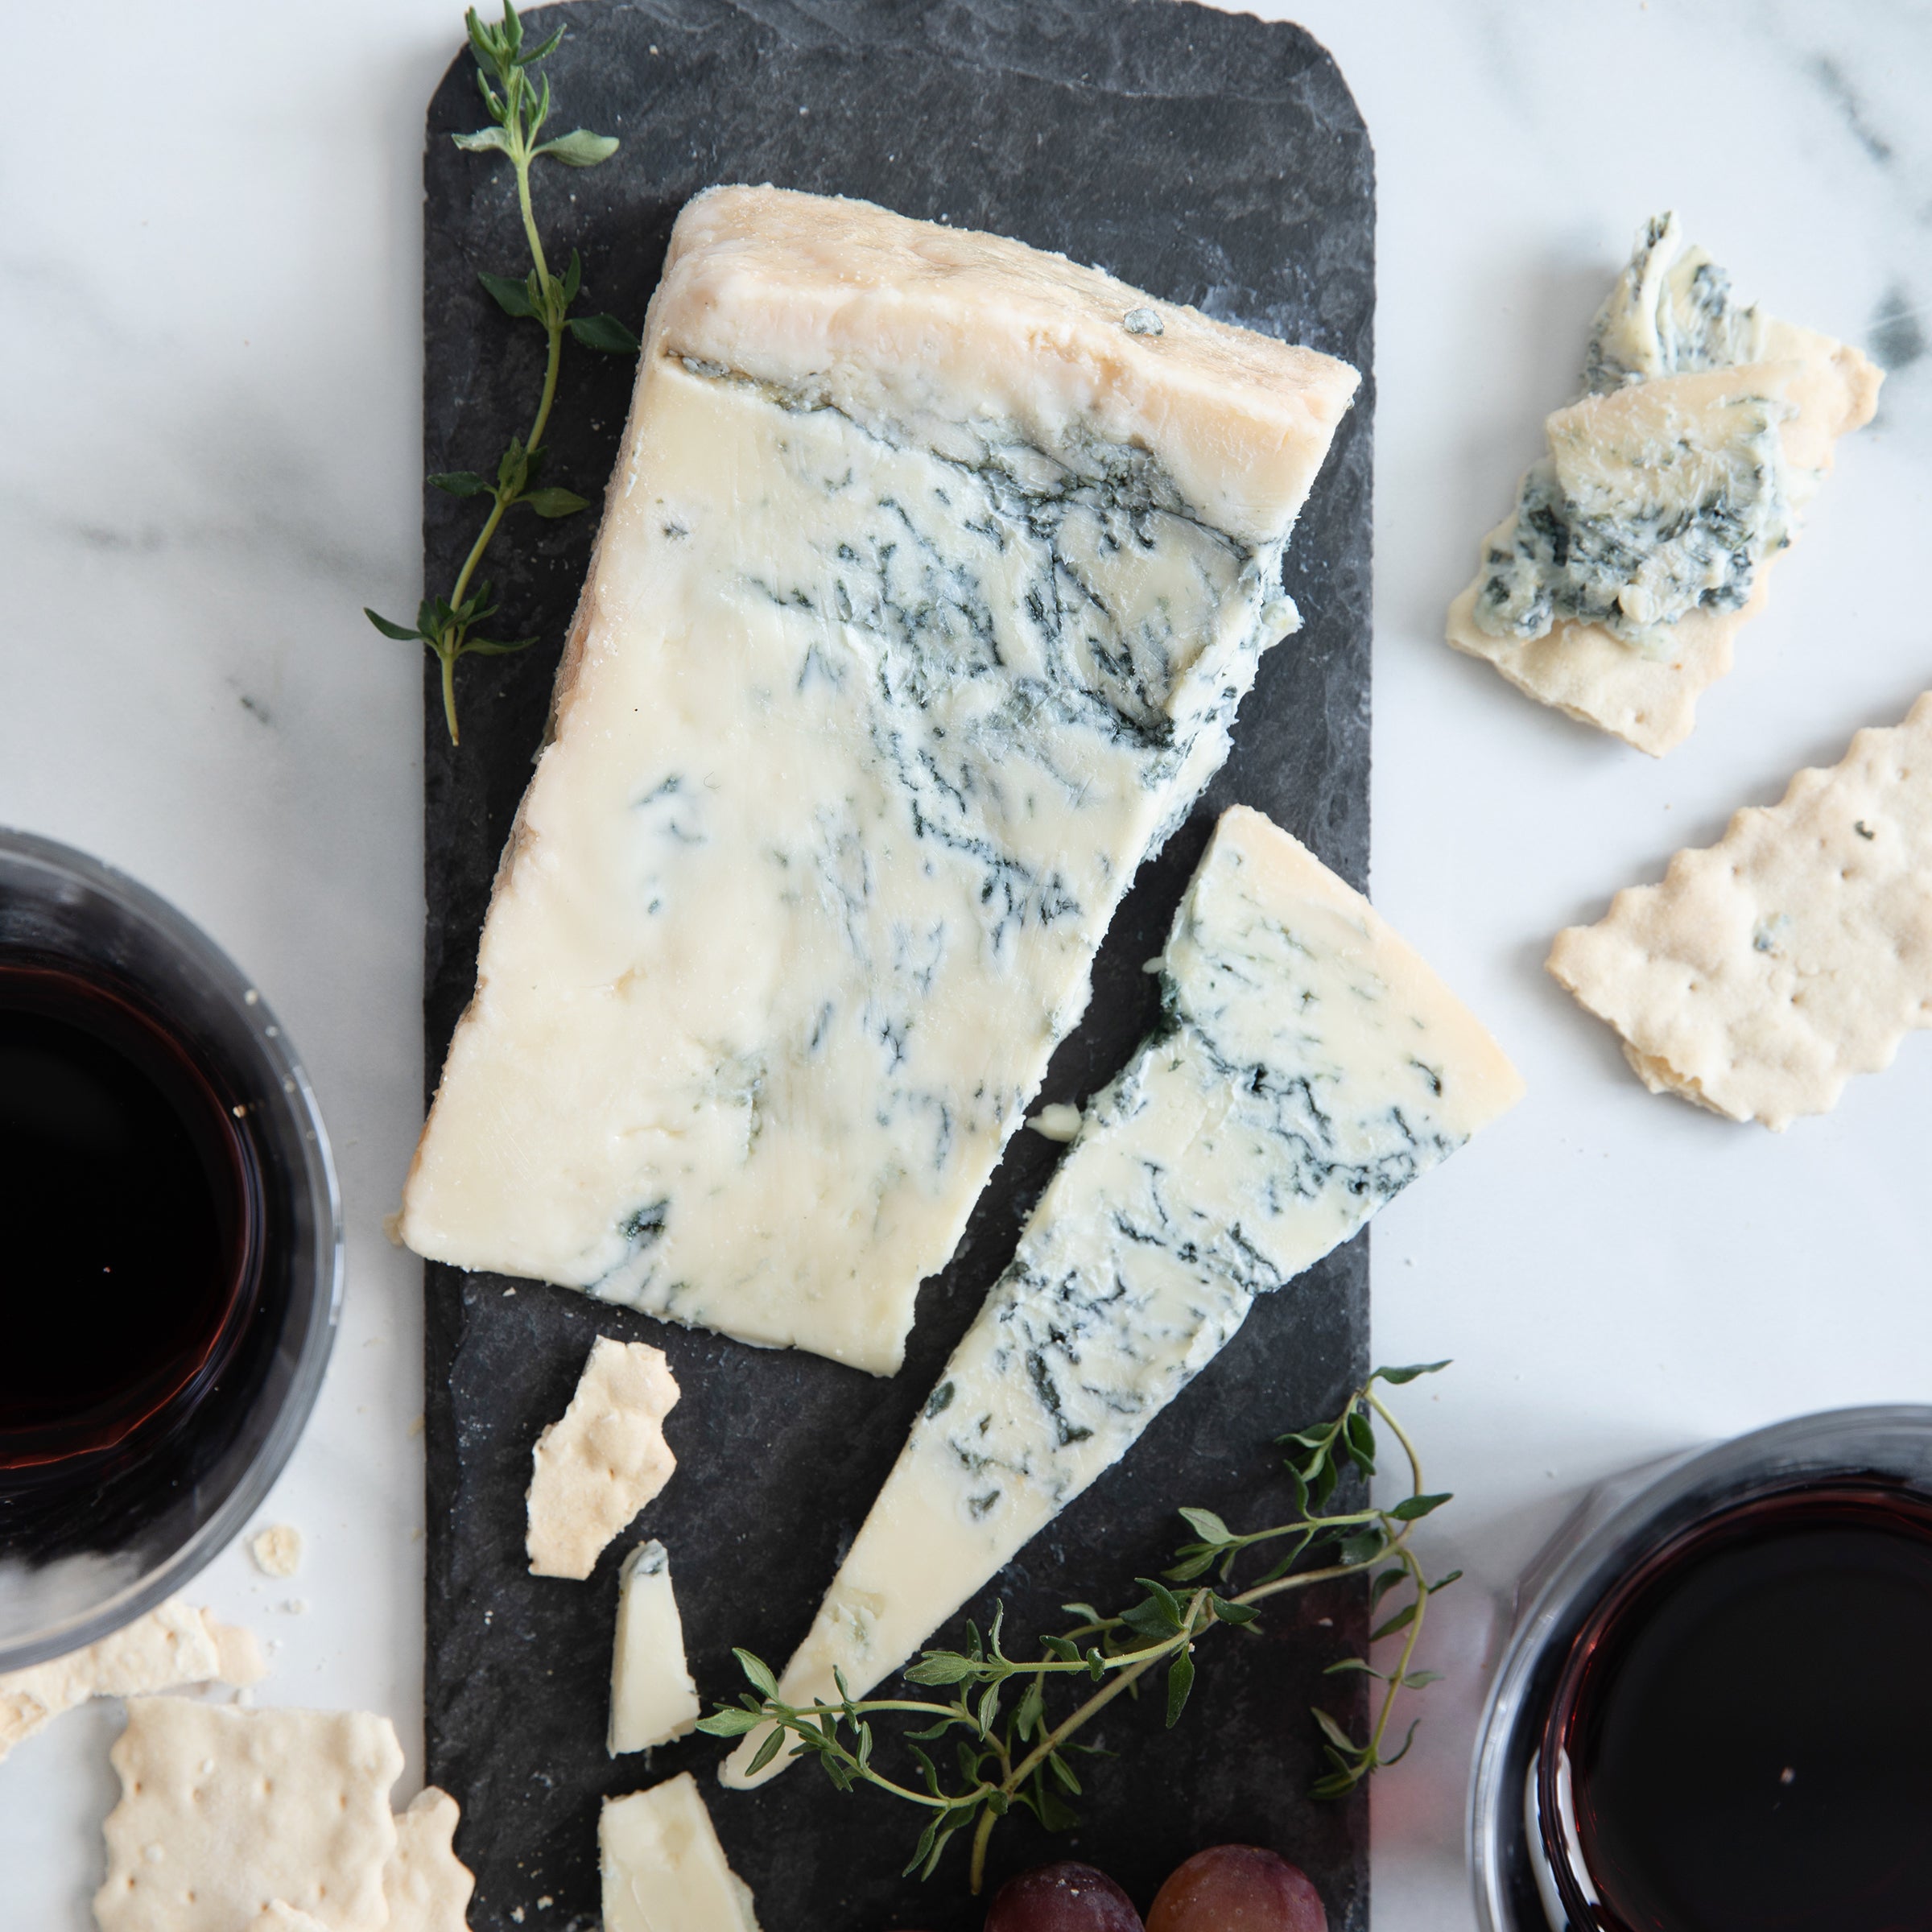 Gorgonzola Blue Cheese 3.3 lbs